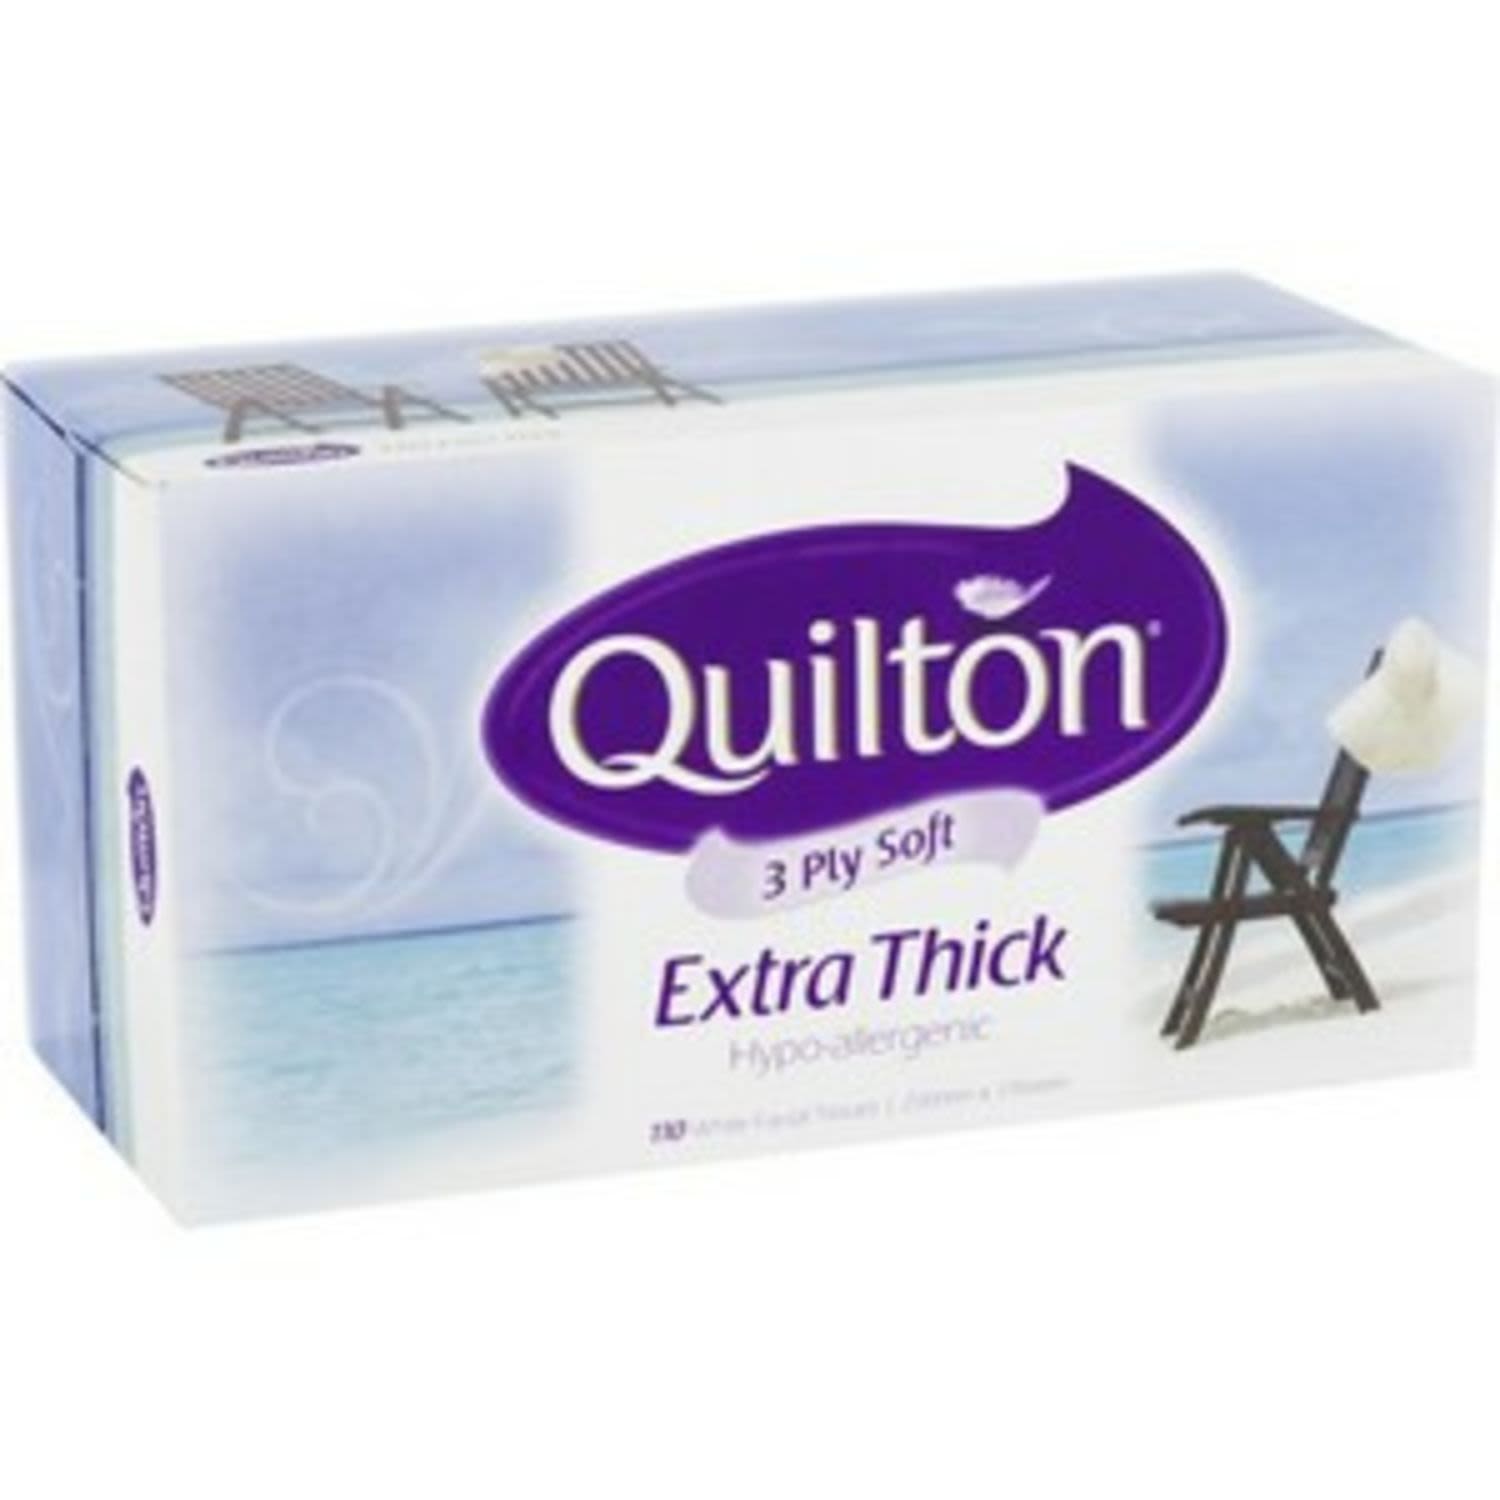 Quilton Classic White Facial Tissues, 1 Each